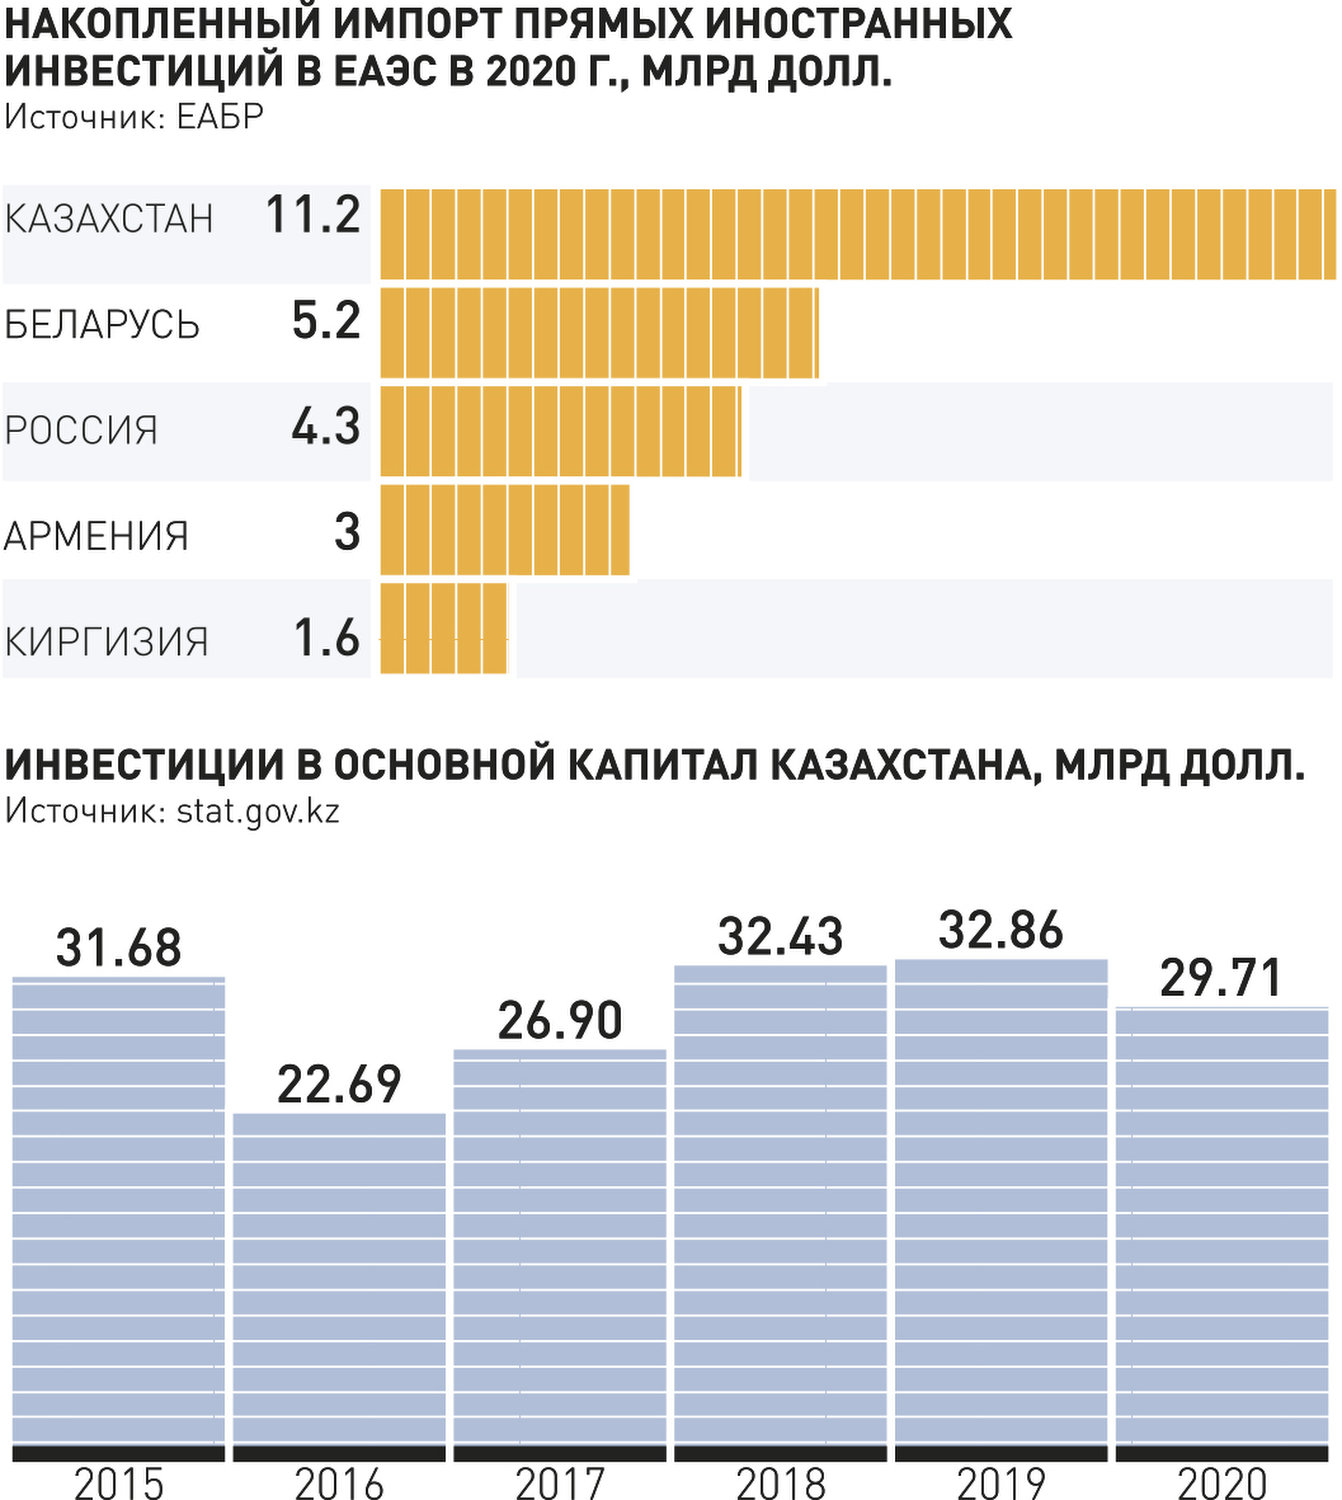 Реферат: Налогообложение в России, его влияние на цены и деловую активность. Налогообложение в других странах